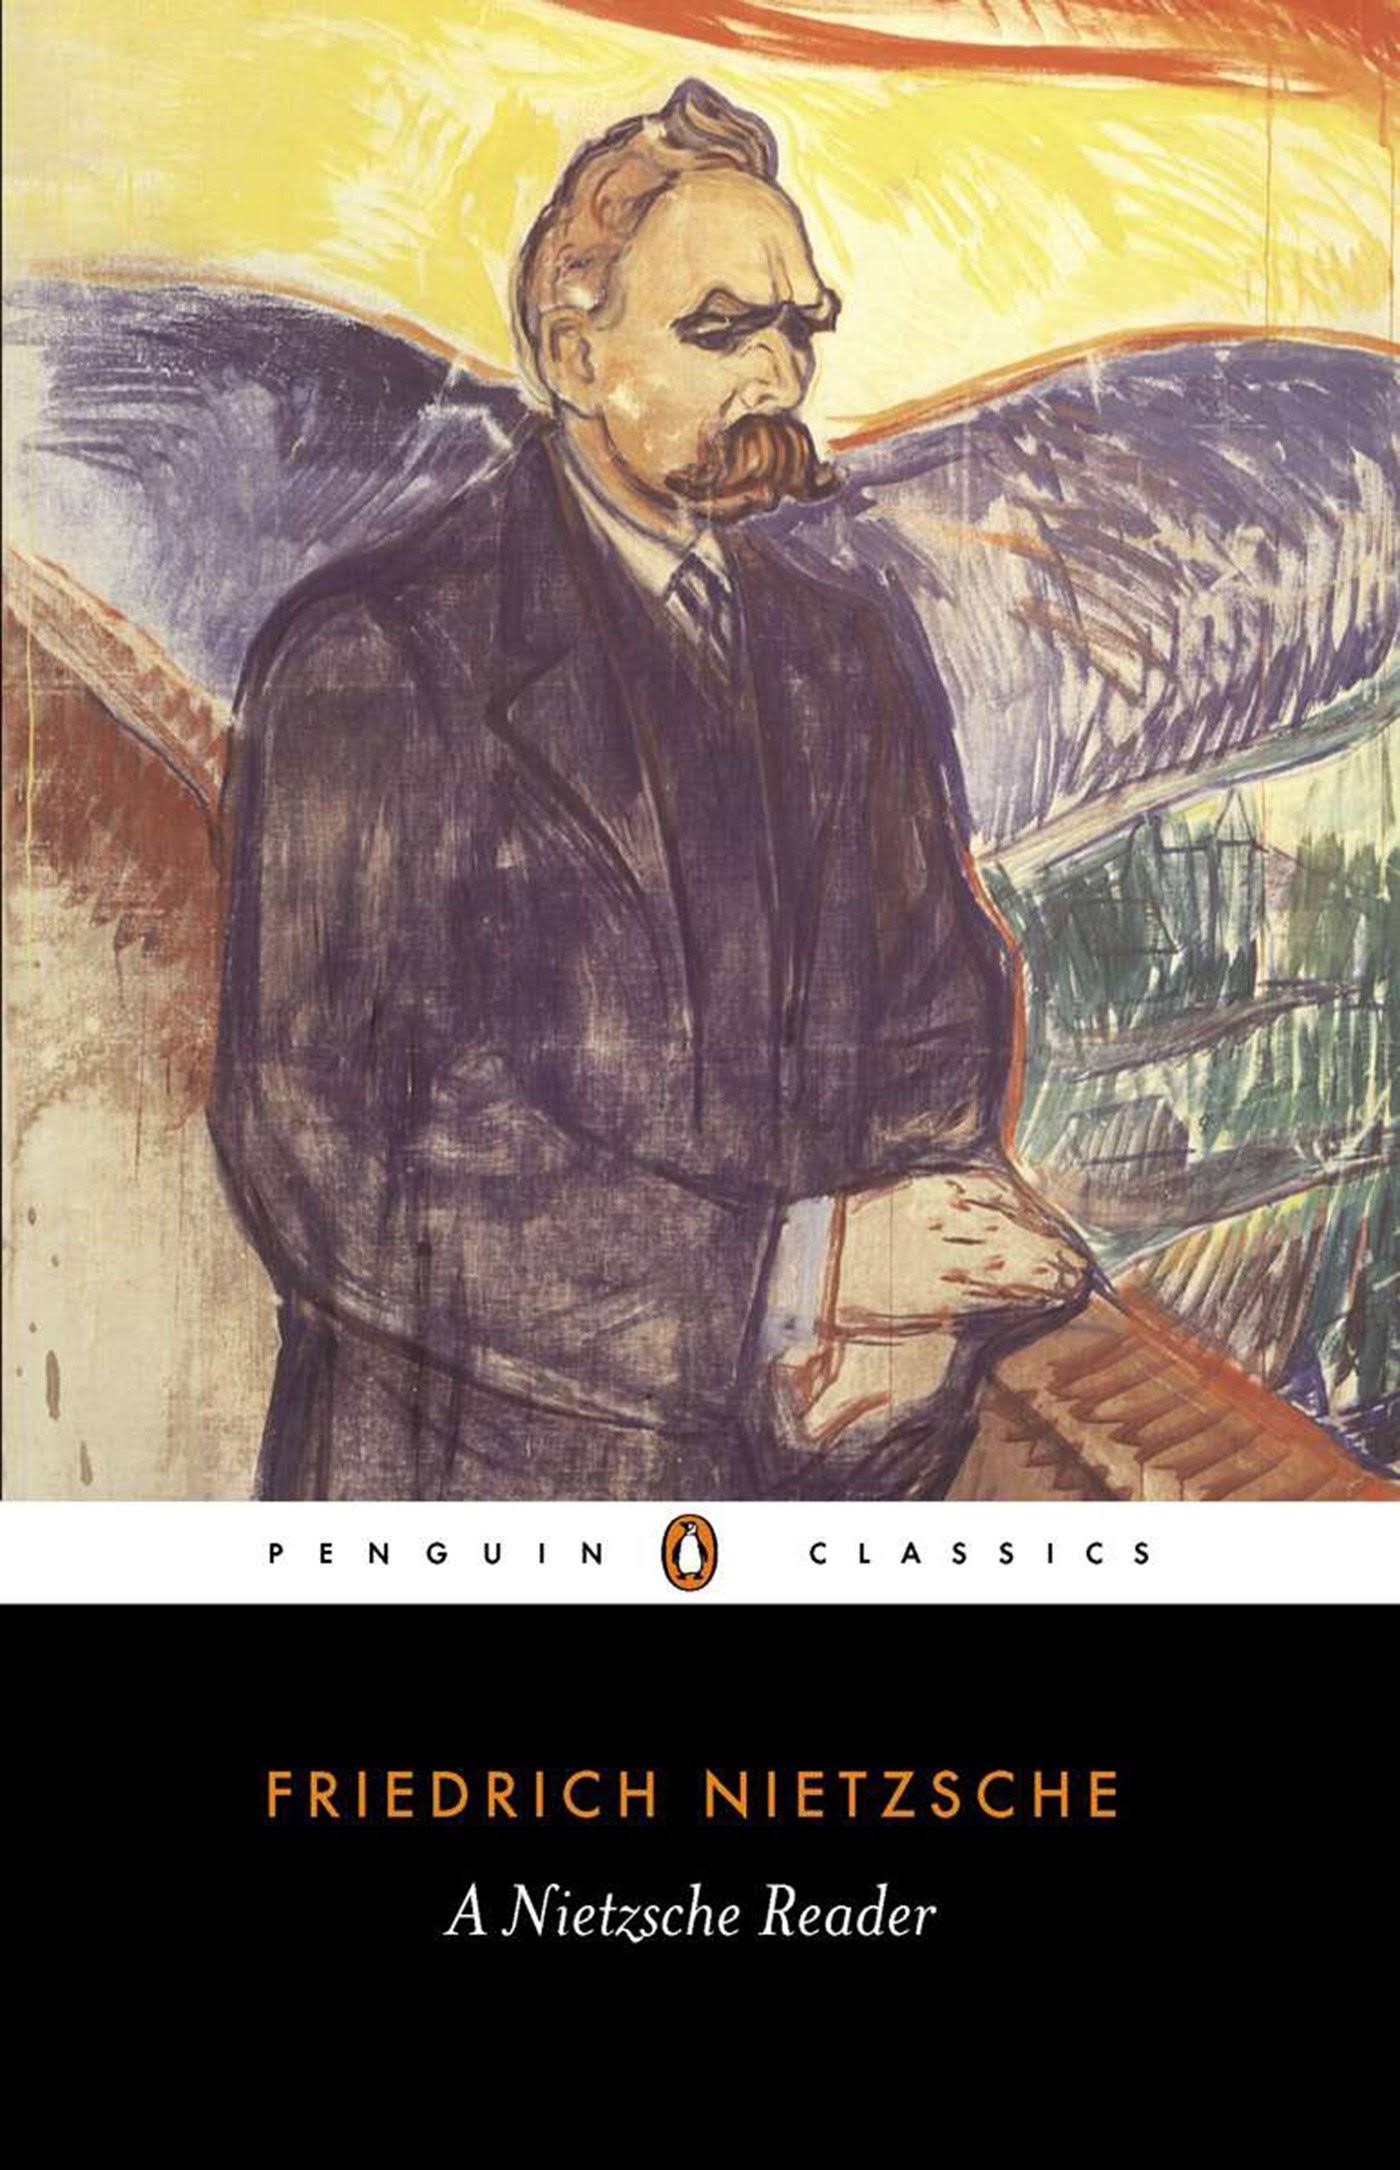 A Nietzsche Reader [Book]